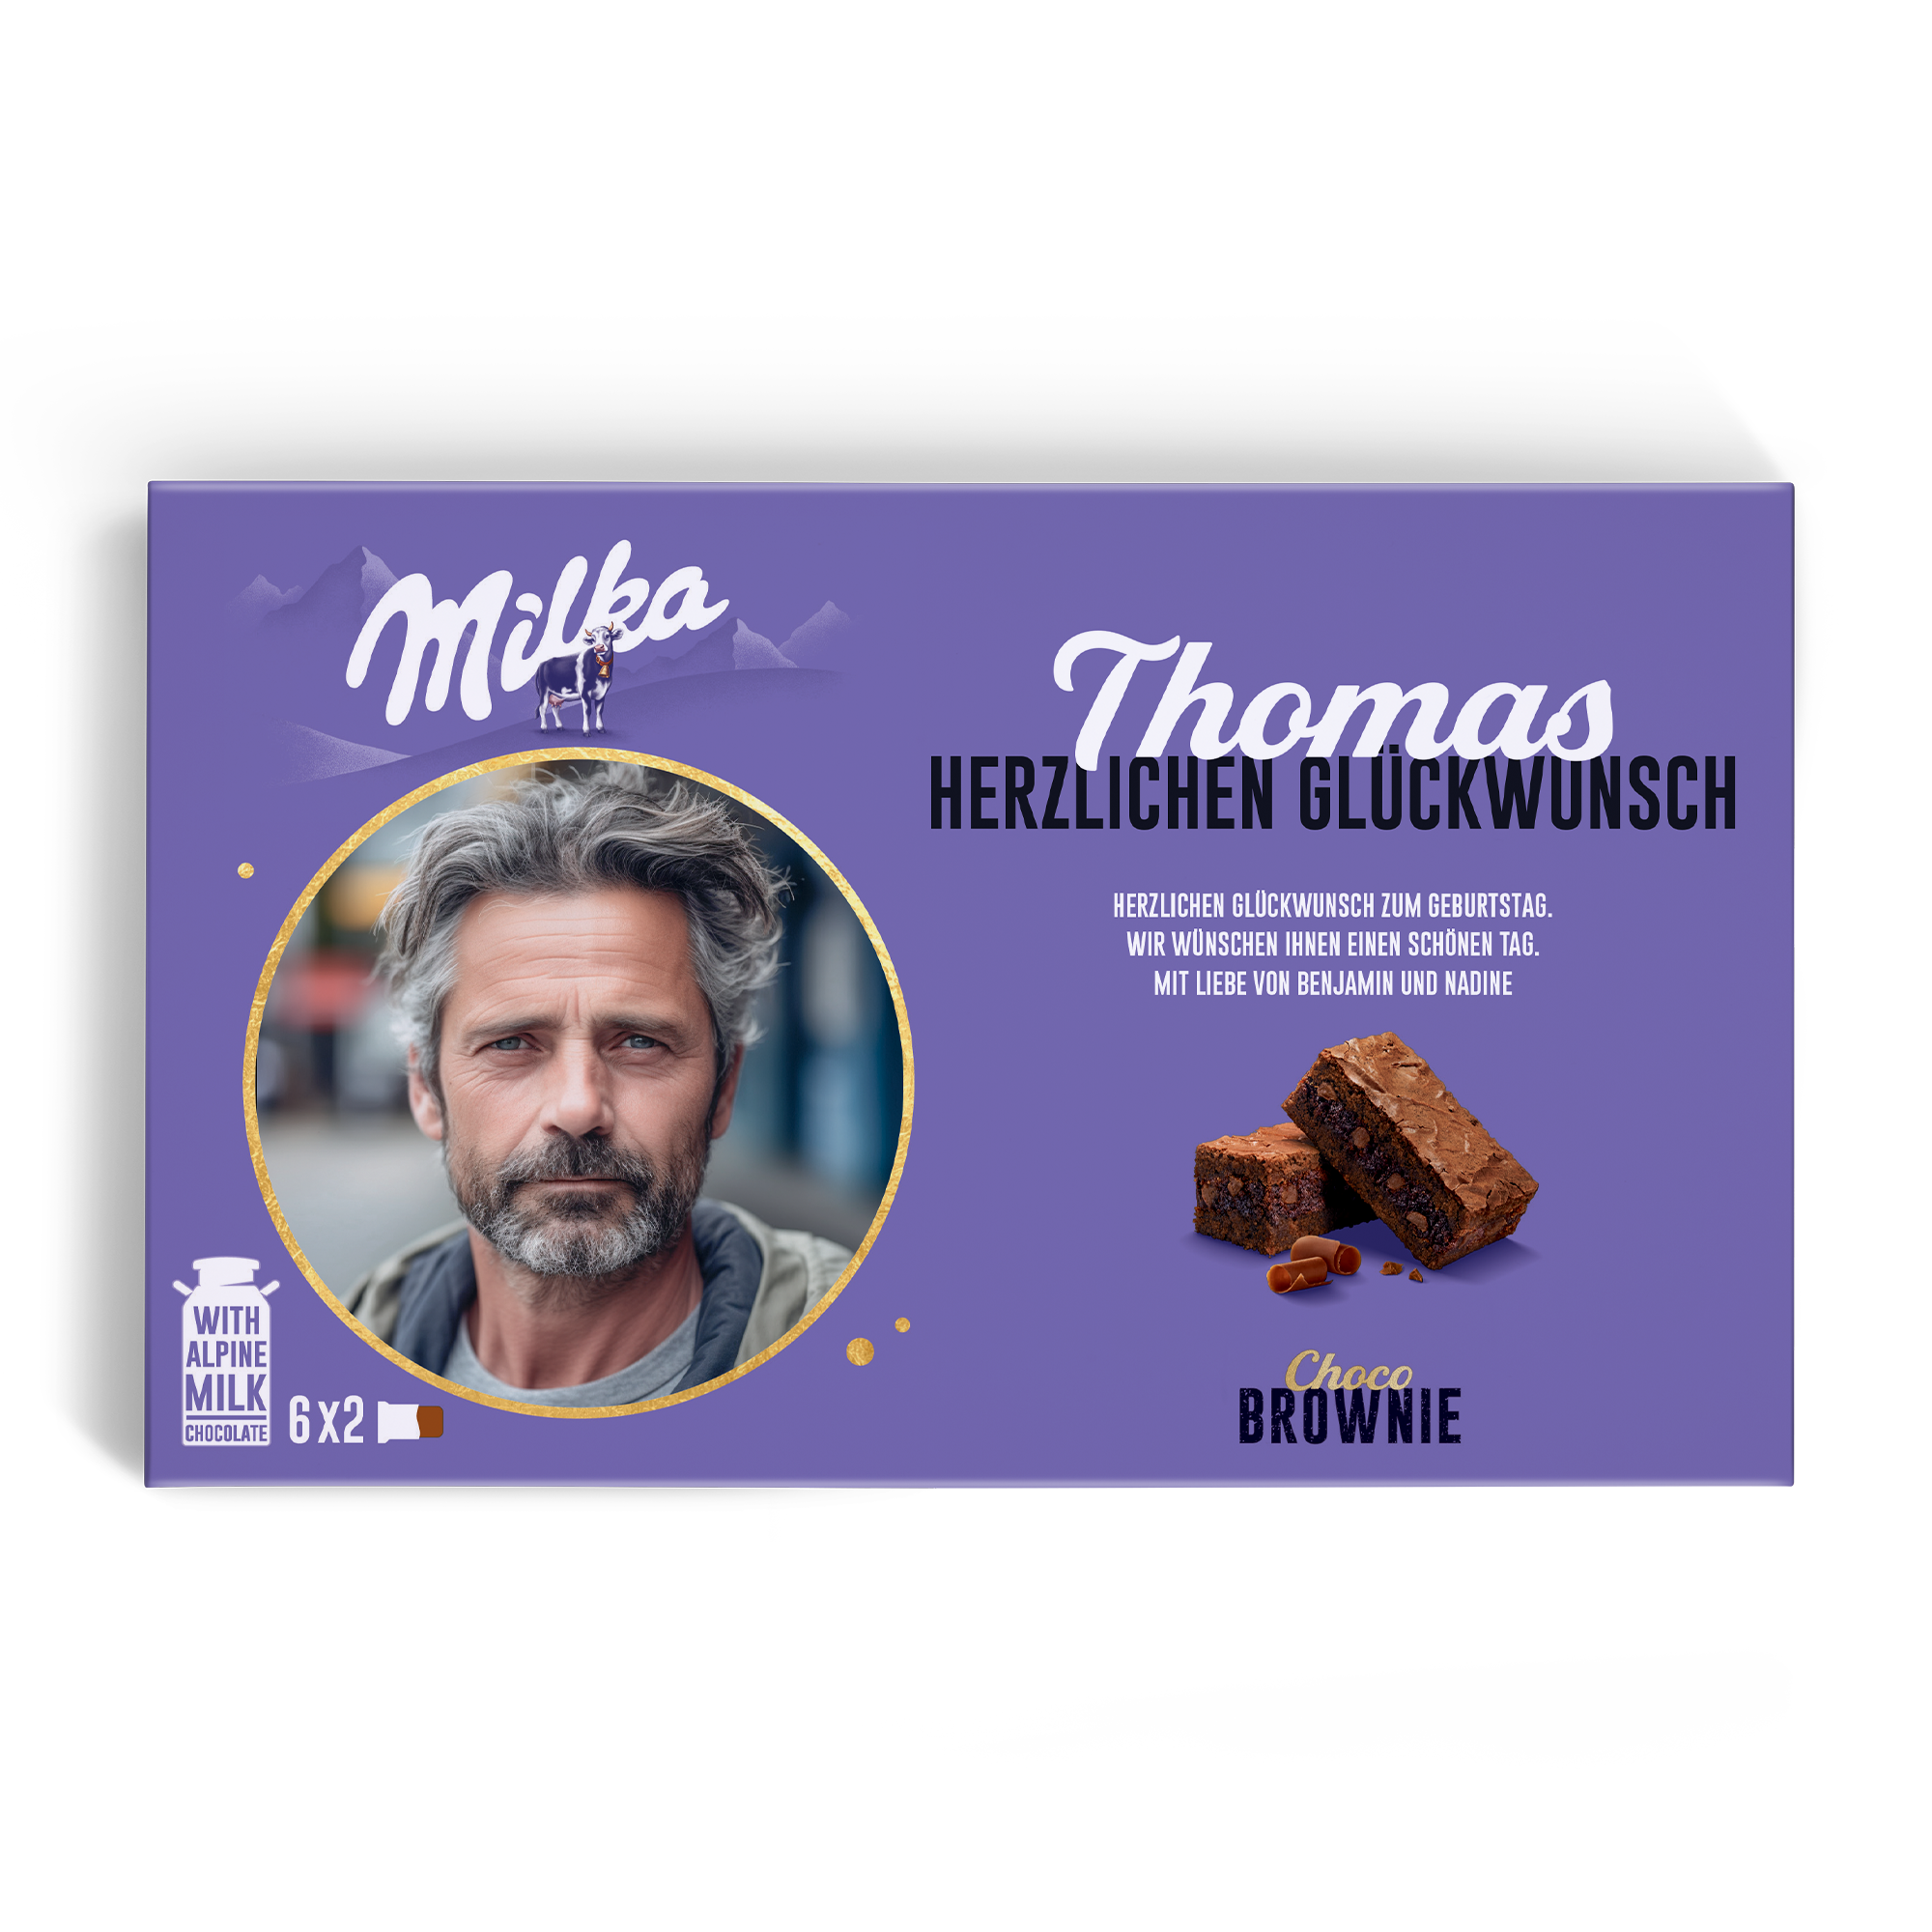 Personalisierte Milka Choco Brownie-Geschenkbox